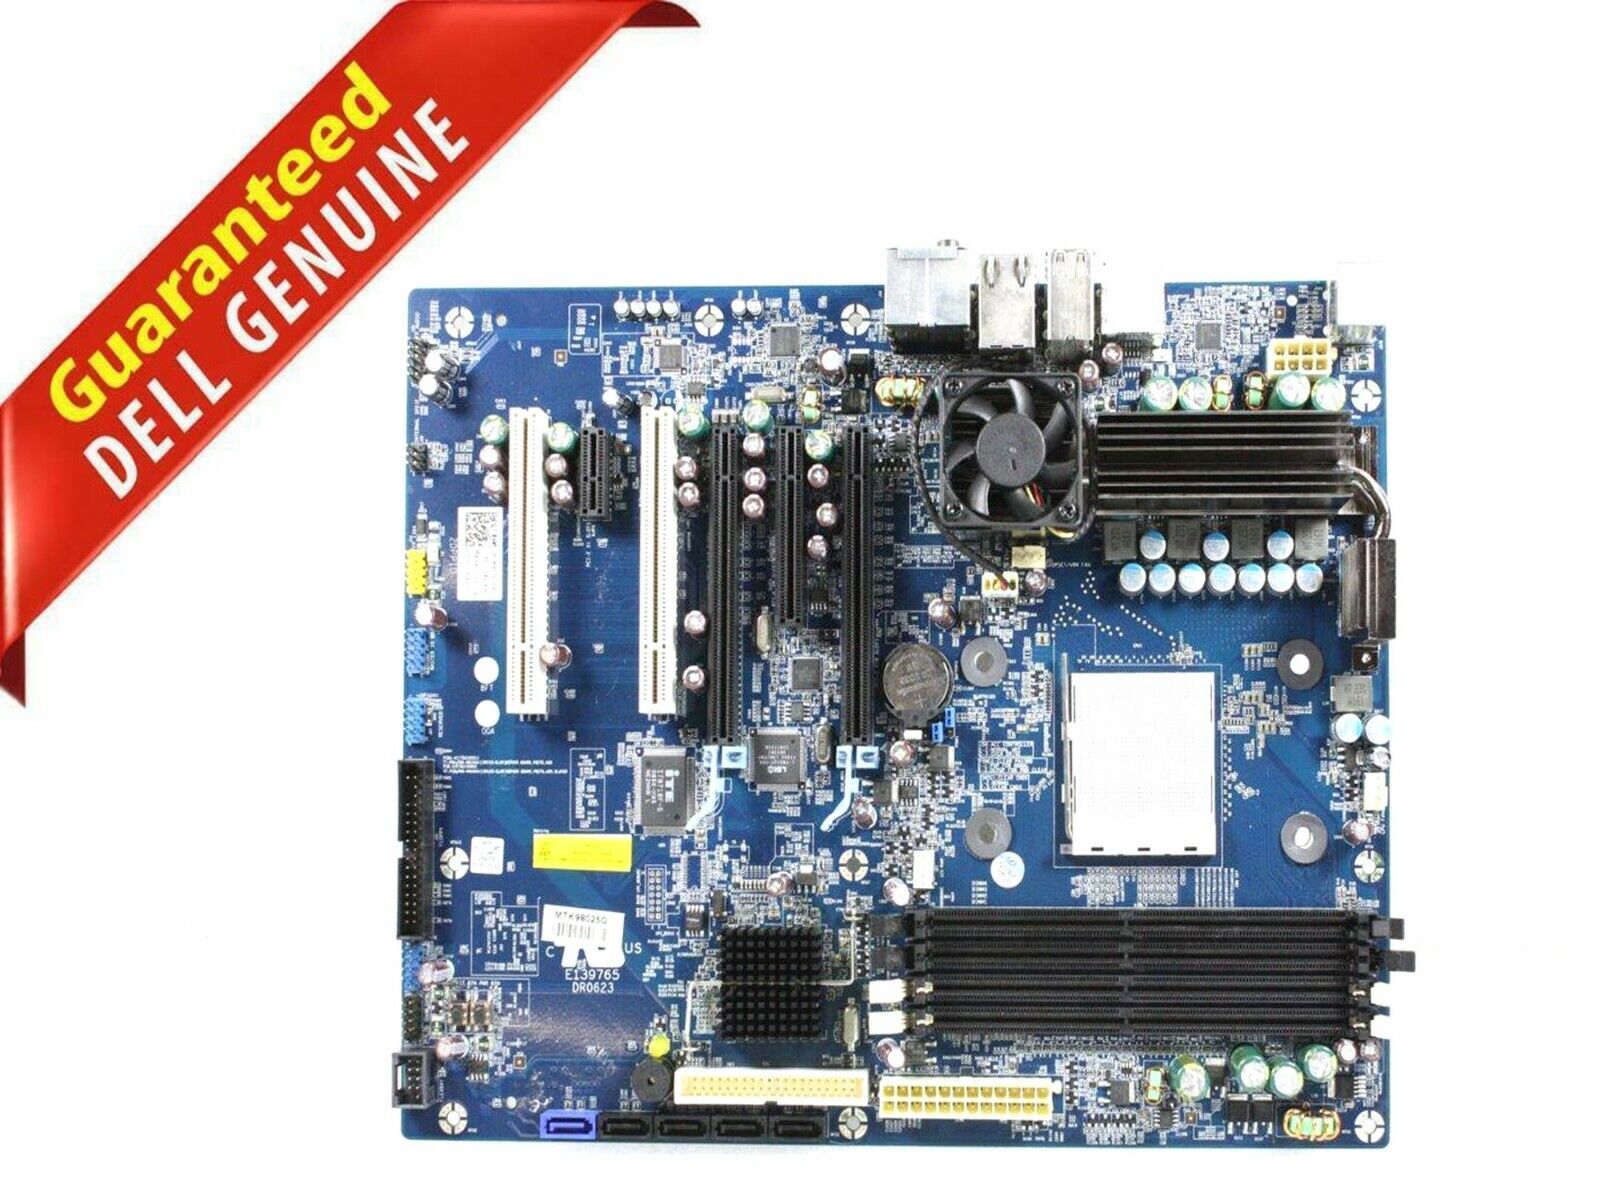 Original Dell XPS 625 Series Socket 775 Desktop AMD Motherboard DDR2 w/fan P927G